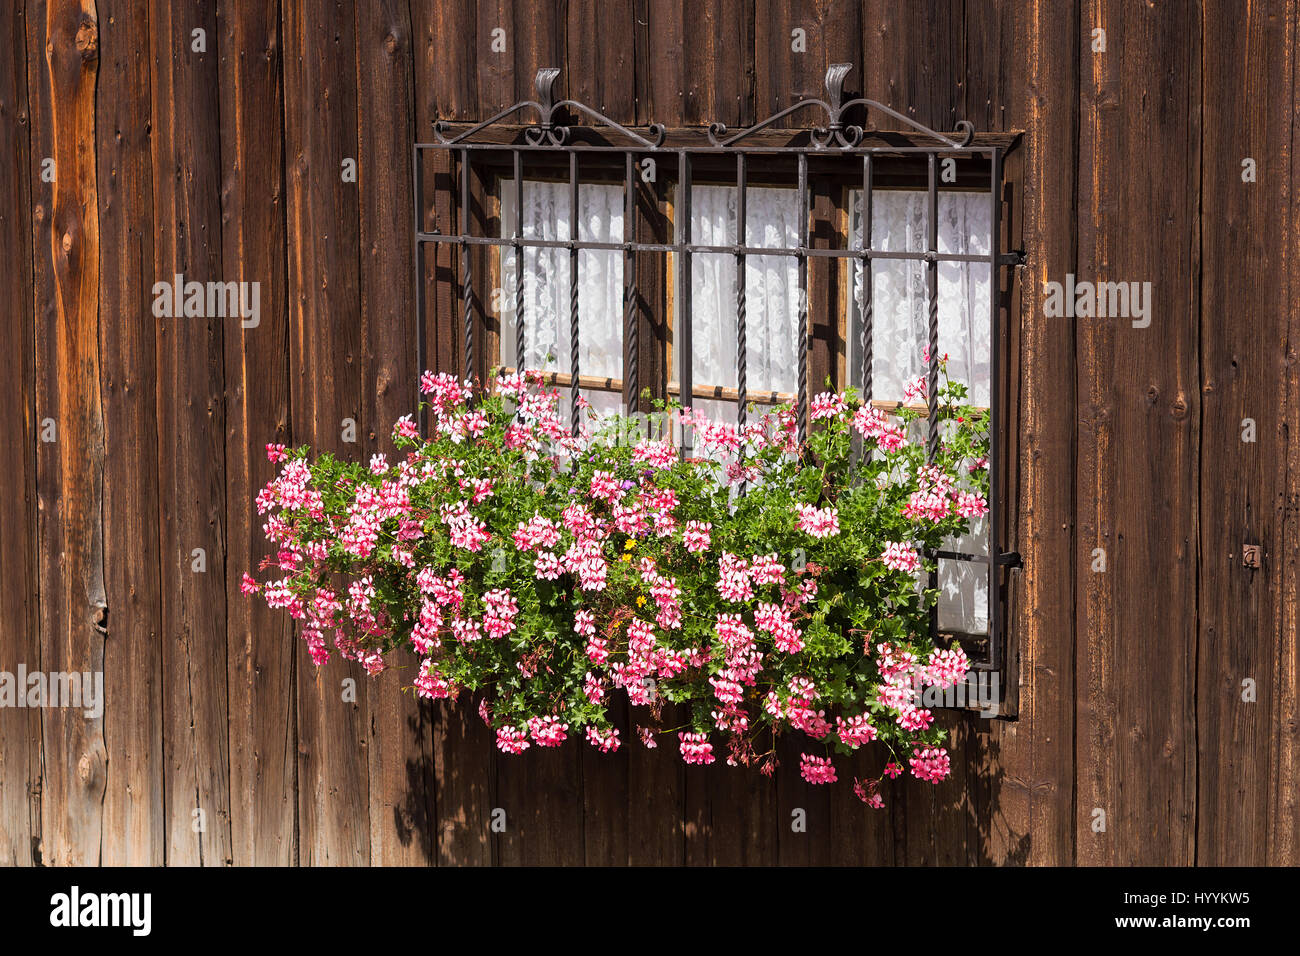 Fenster mit Blumen im alten Landhaus mit rauhen Holzwände ausgeschlossen. Traditionelle Wabi-Sabi ästhetischen Weltanschauung. Stockfoto